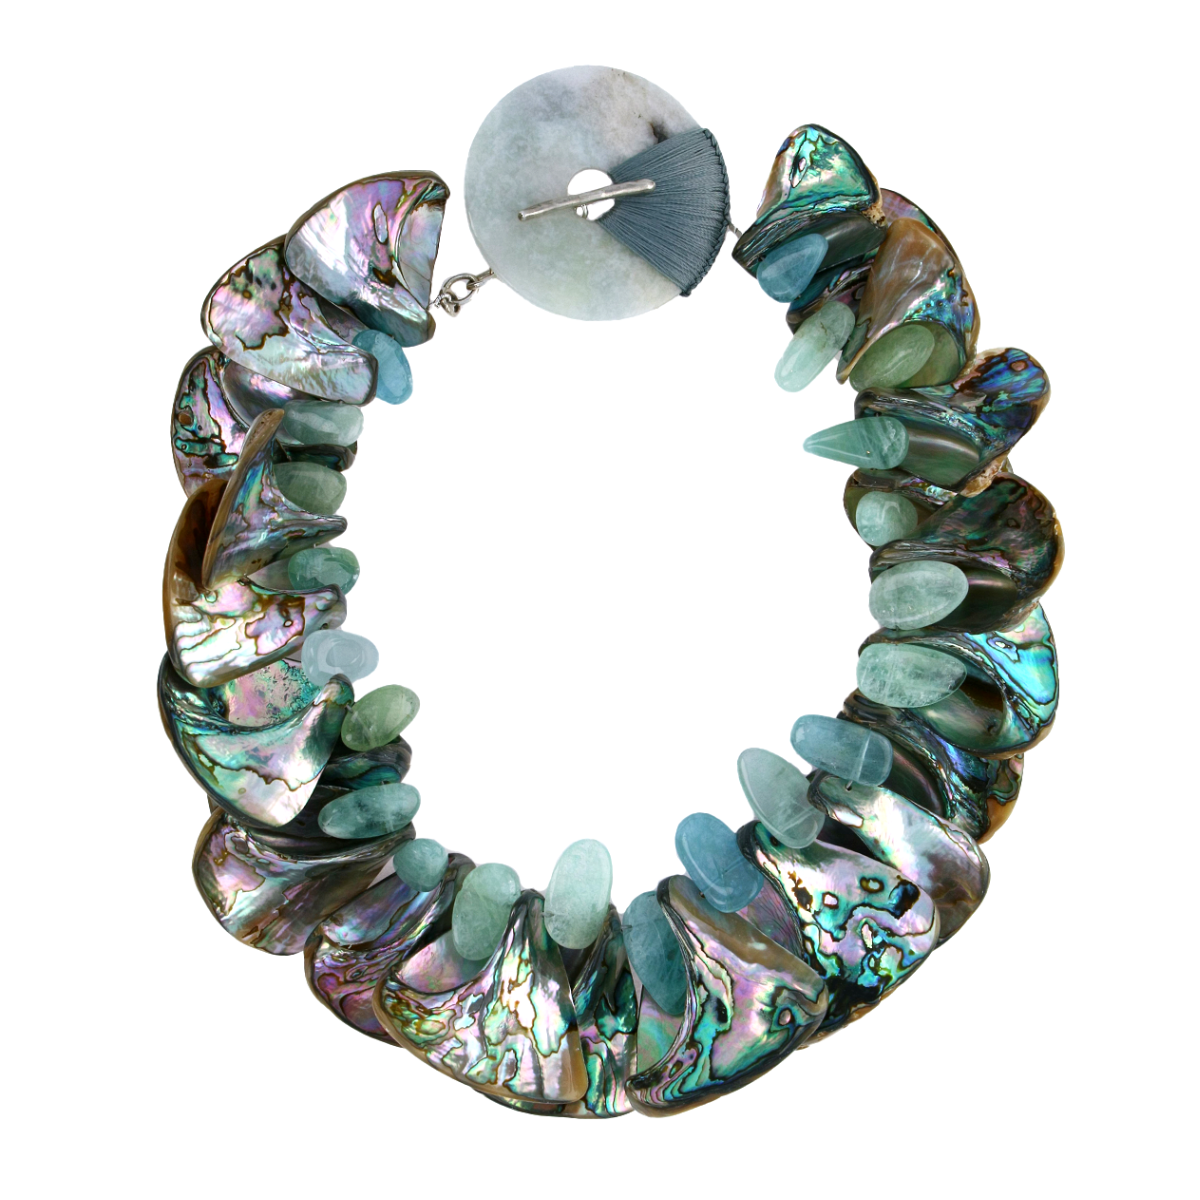 Abalone Aquamarine Necklace